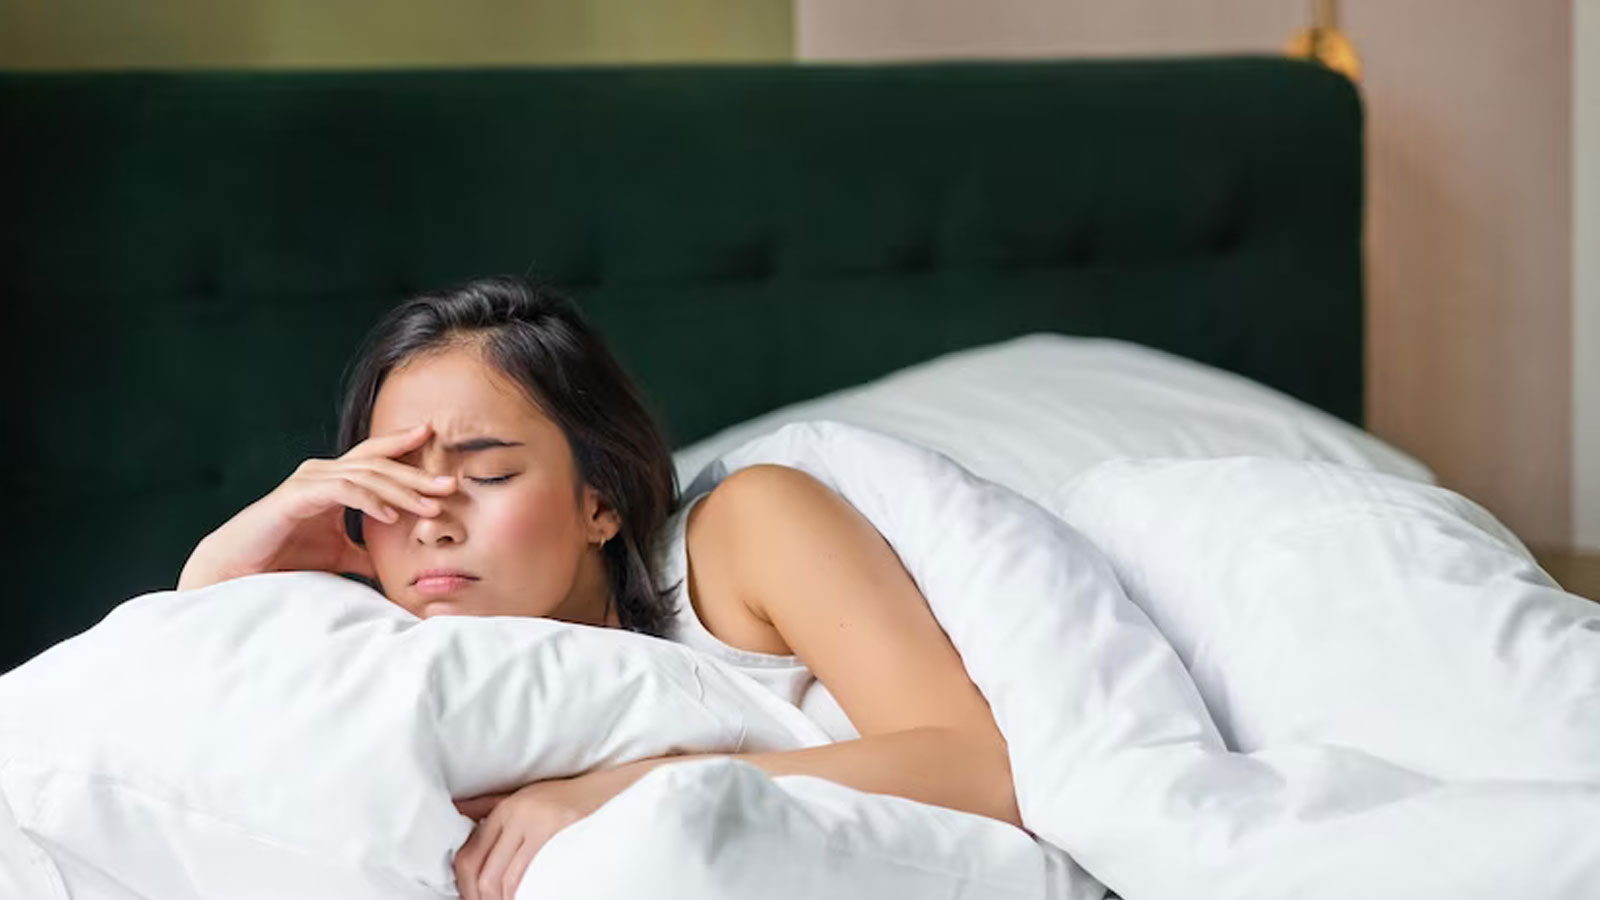 Γιατί ιδρώνουμε στον ύπνο μας; Η επιστήμη αποκαλύπτει